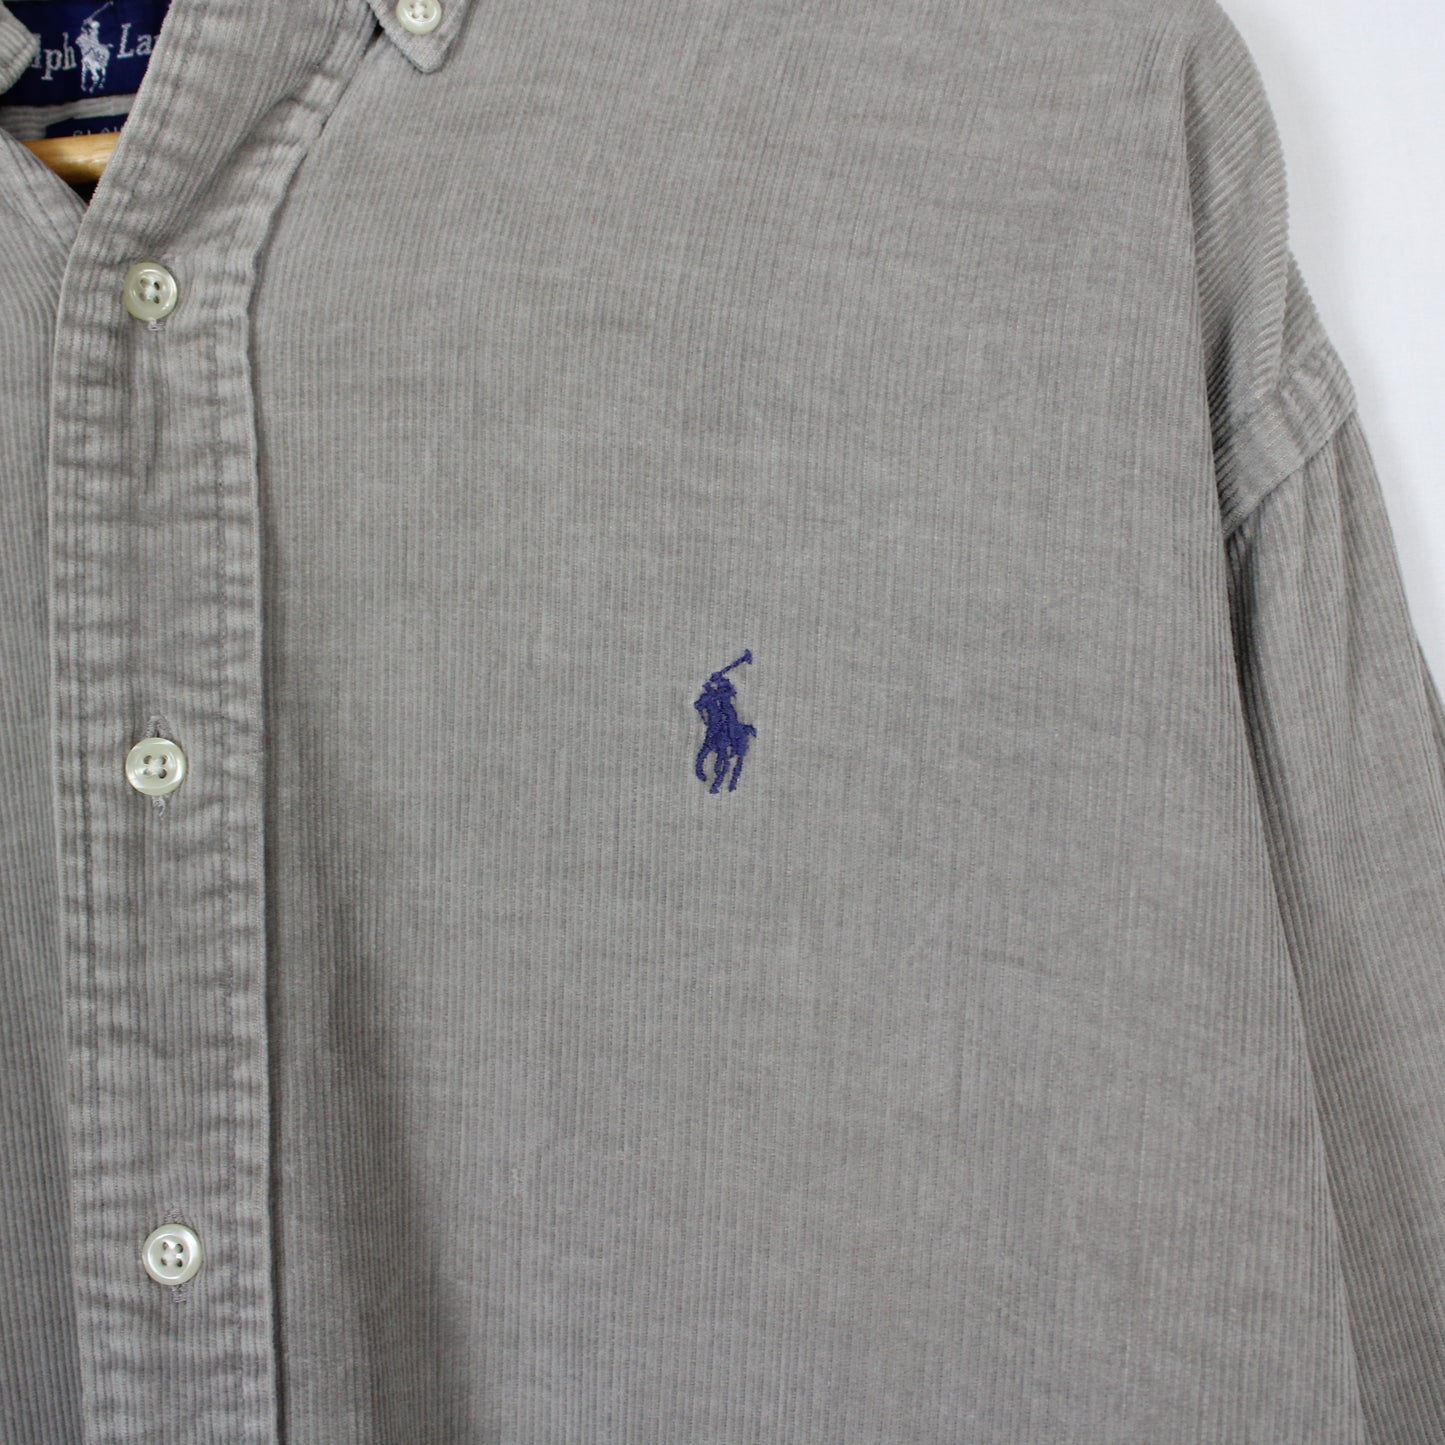 Vintage Polo Corduroy Overshirt - M